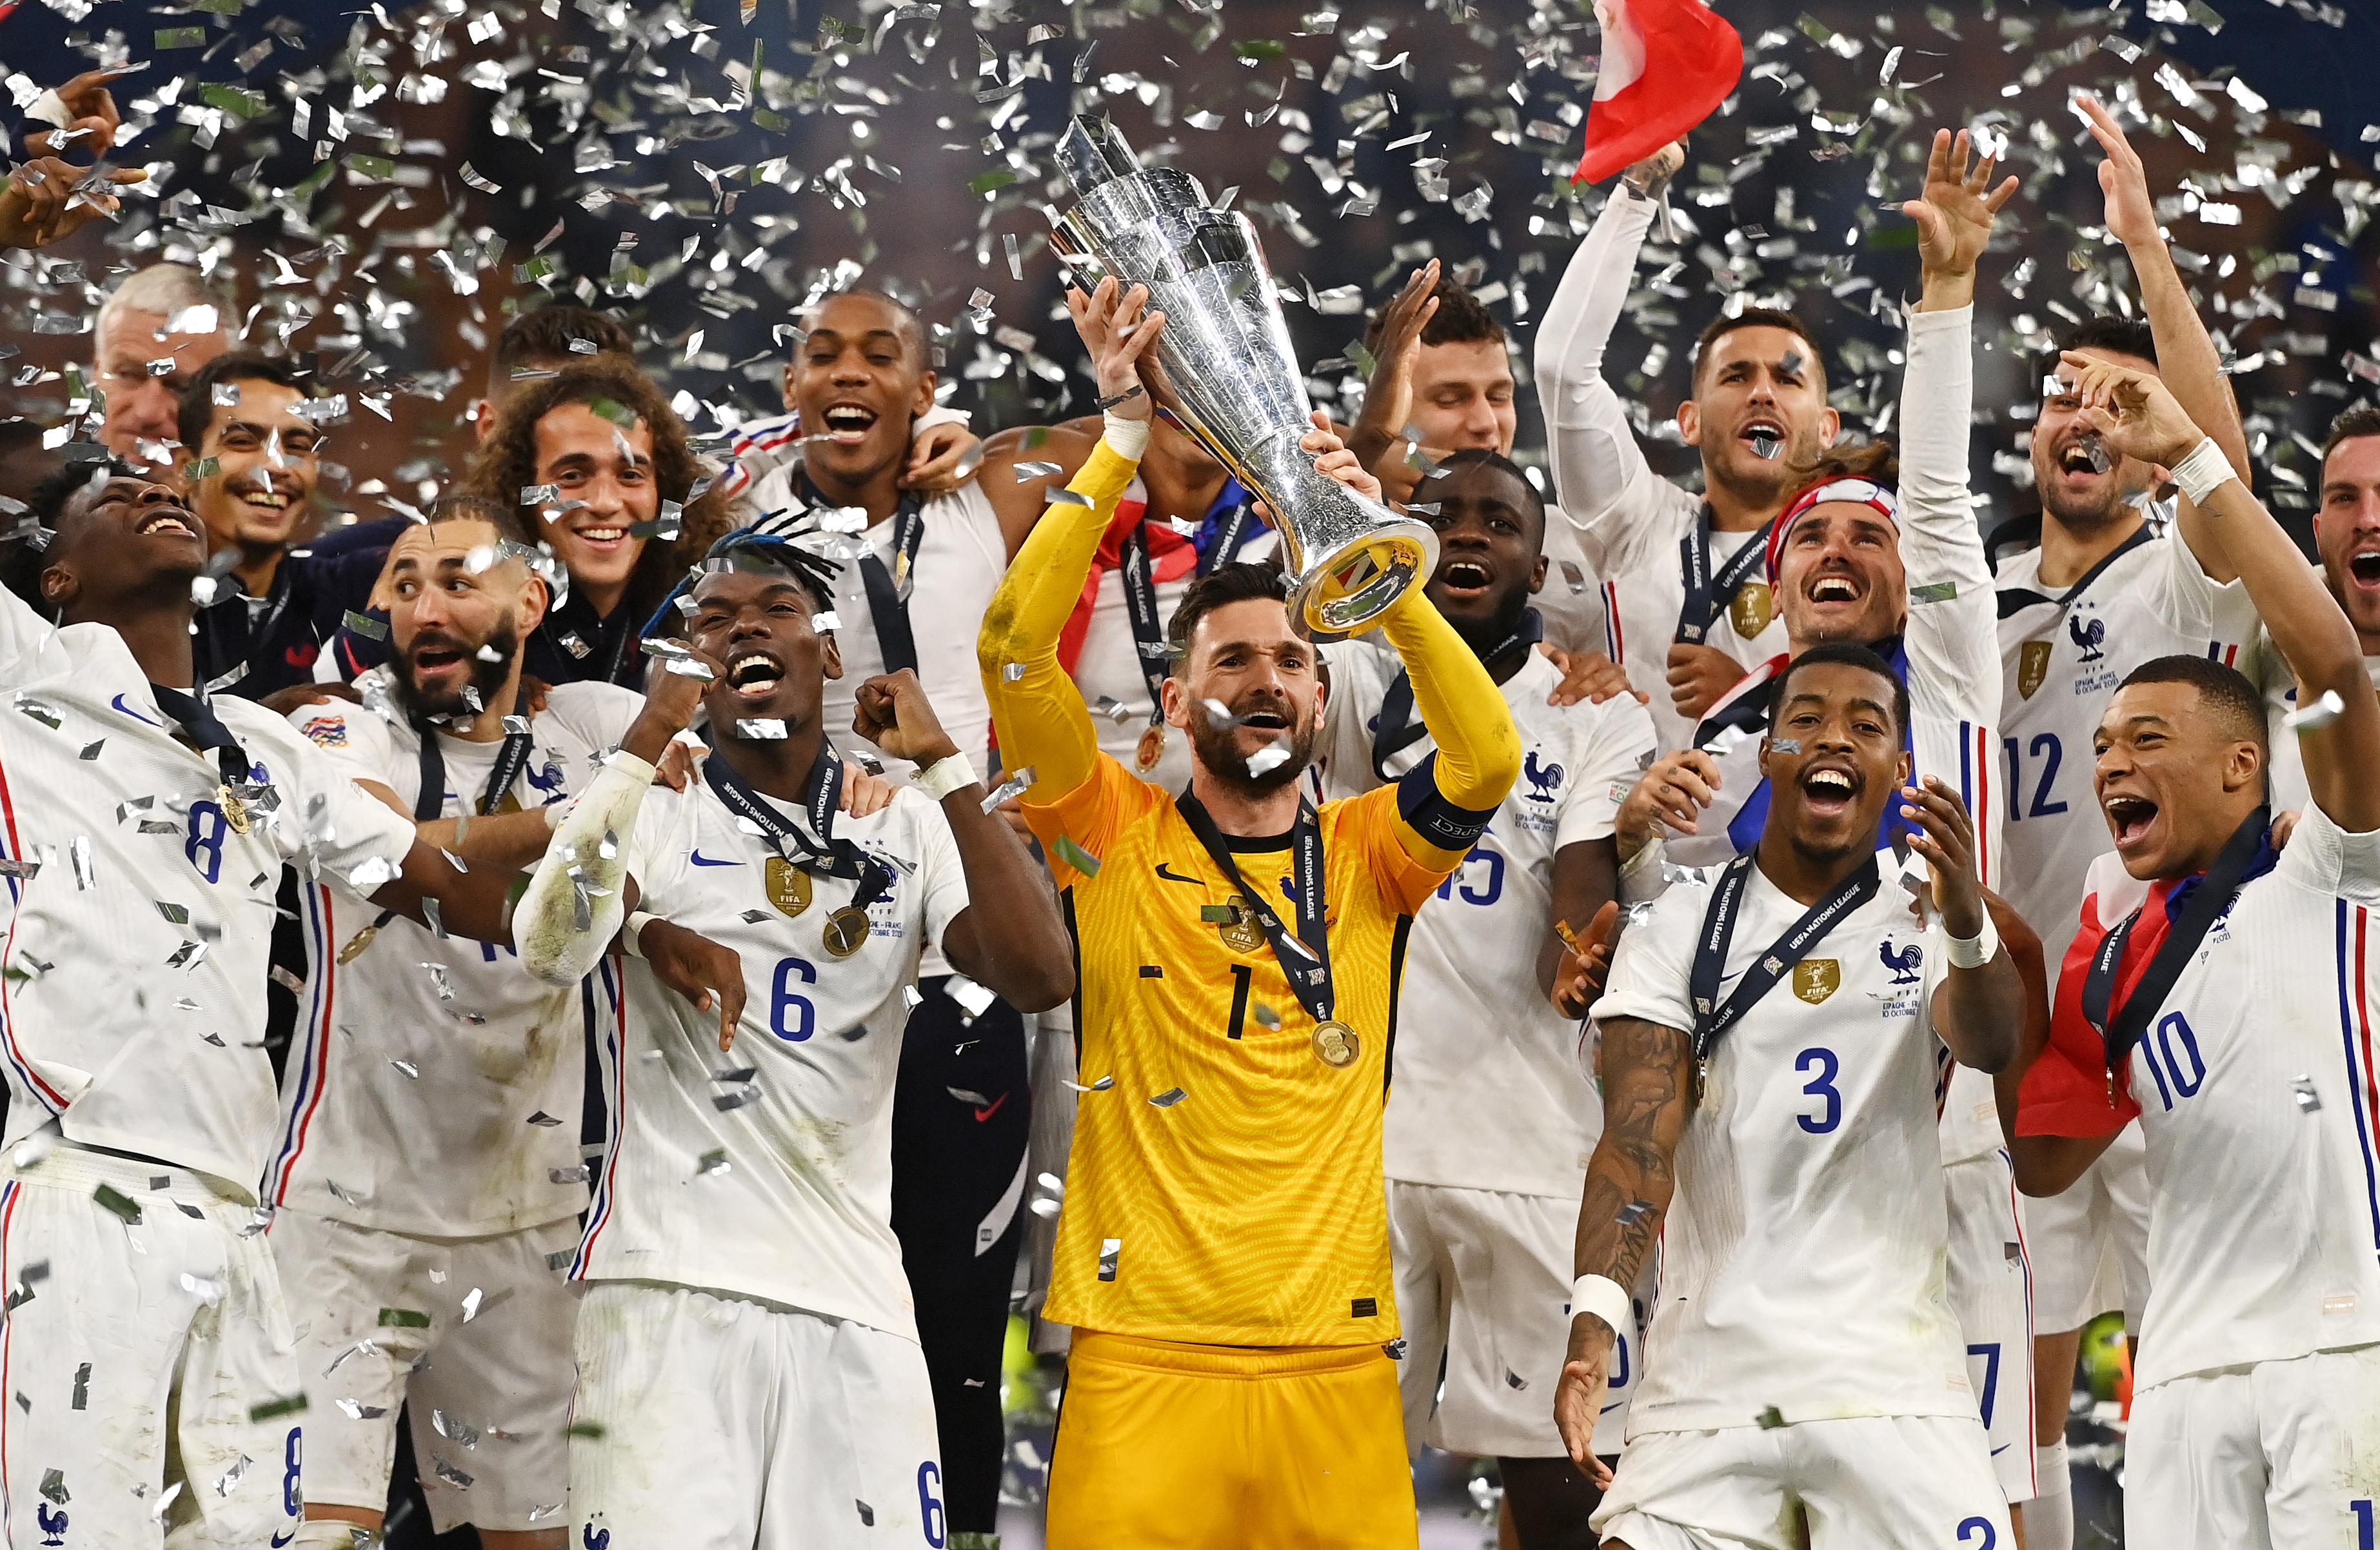 Tropeço da seleção, França campeã e Brasileirão: o resumo do fim de semana